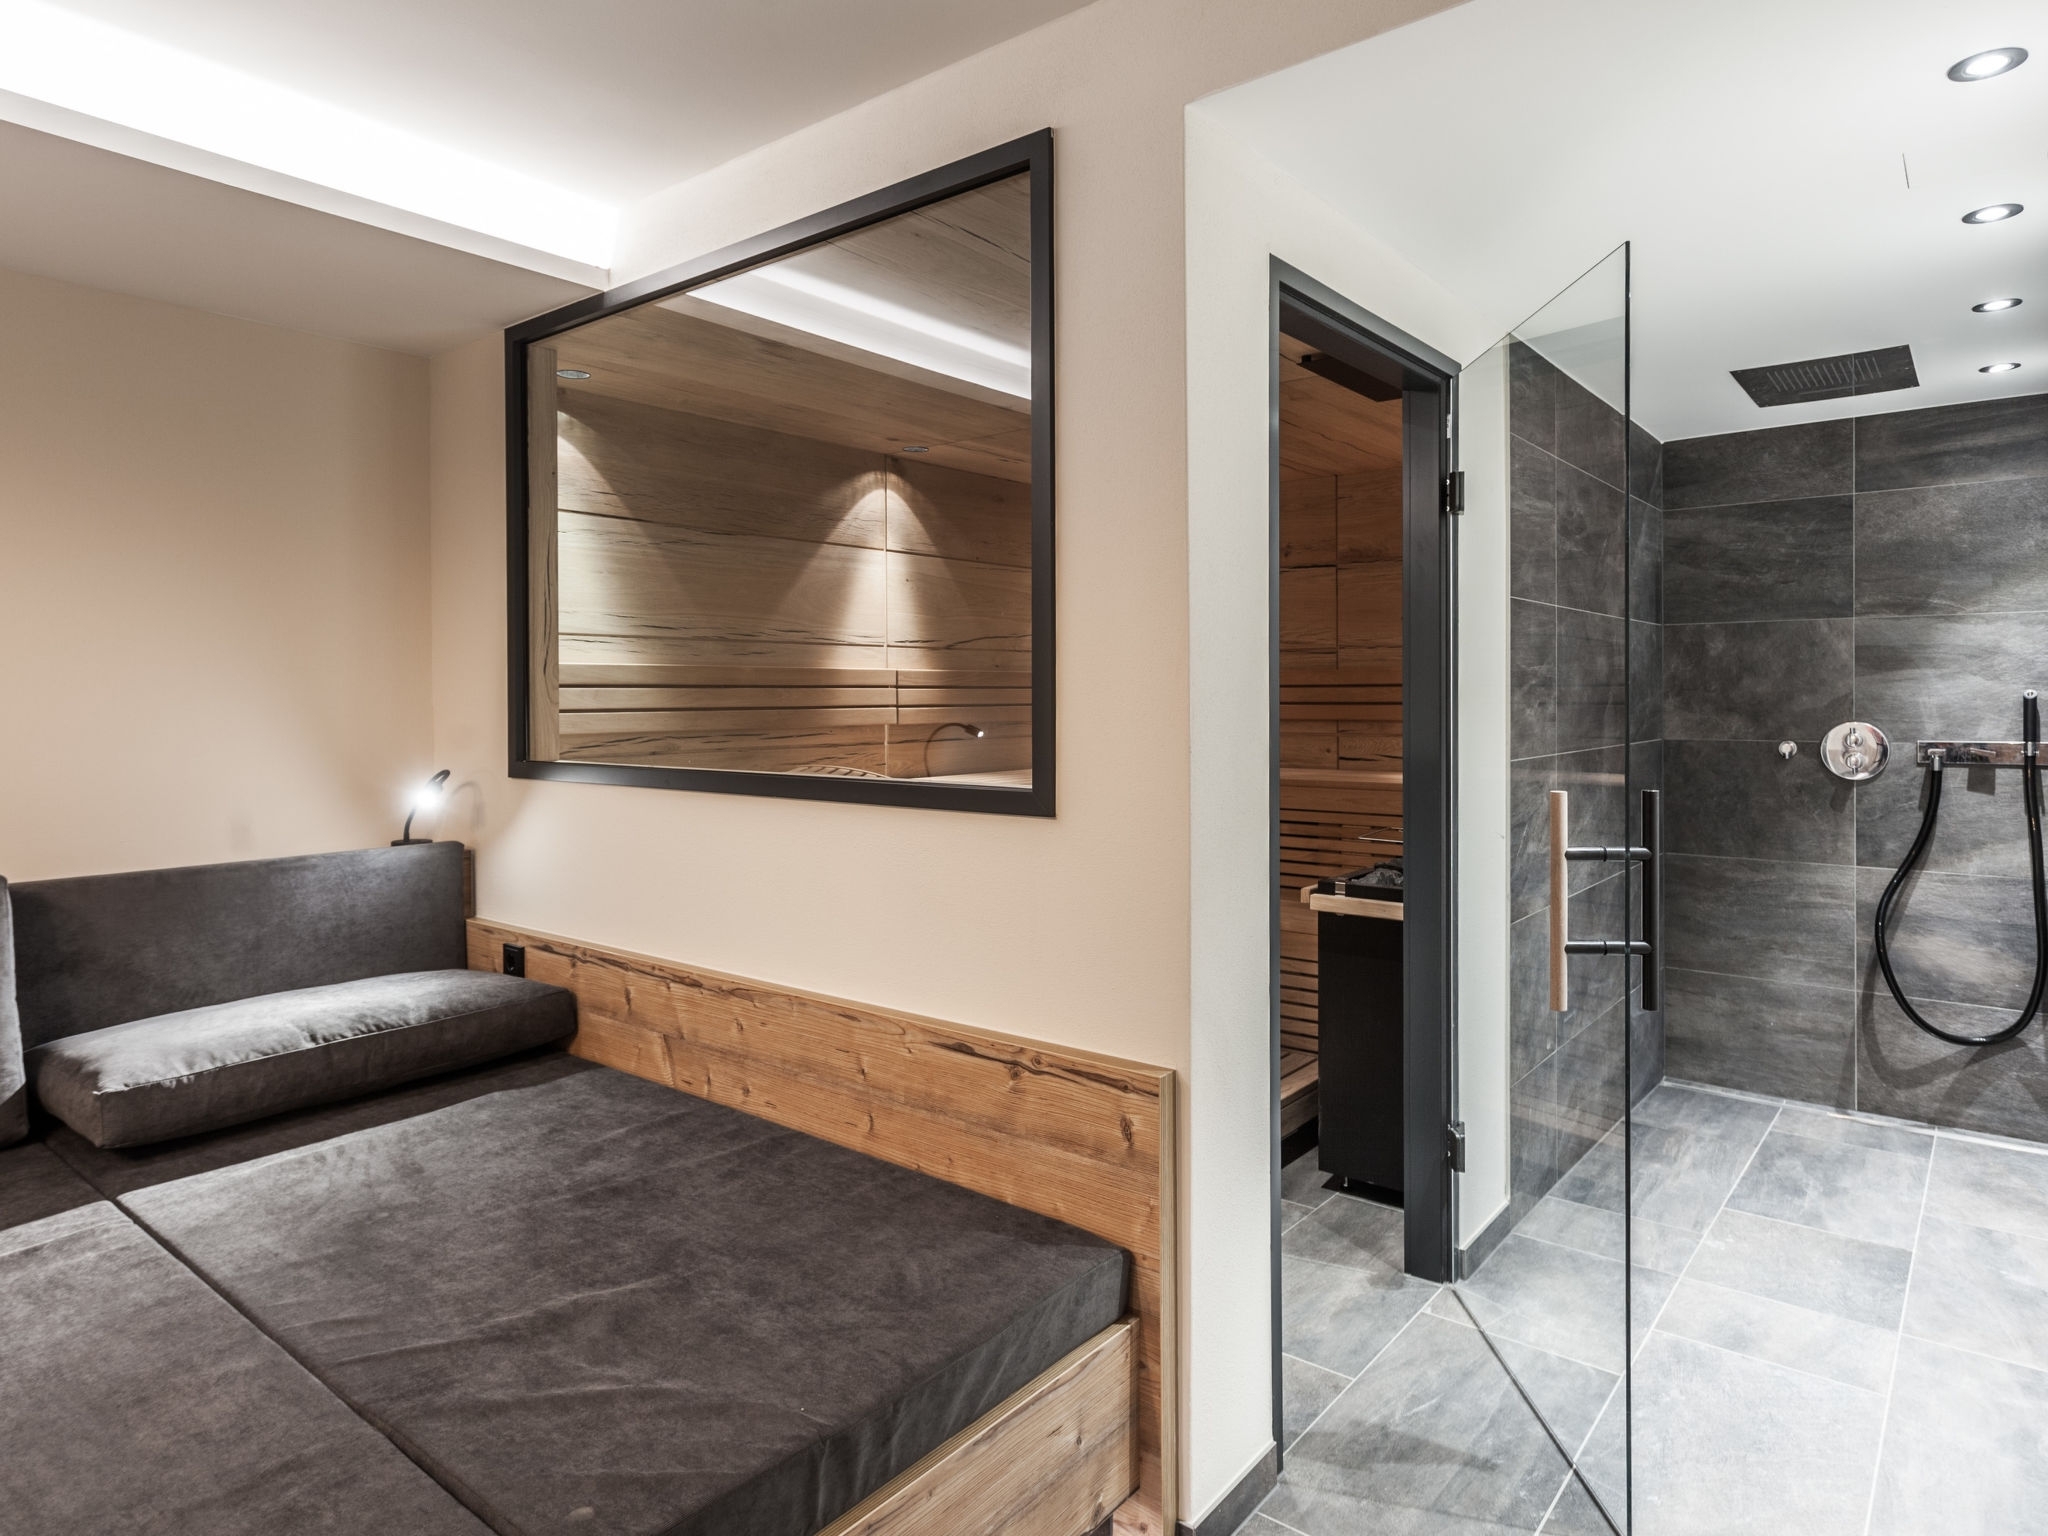 Luxuschalet im Montafon: Wellnessbereich mit Sauna, Regendusche und Ruhebereich (Beispiel)